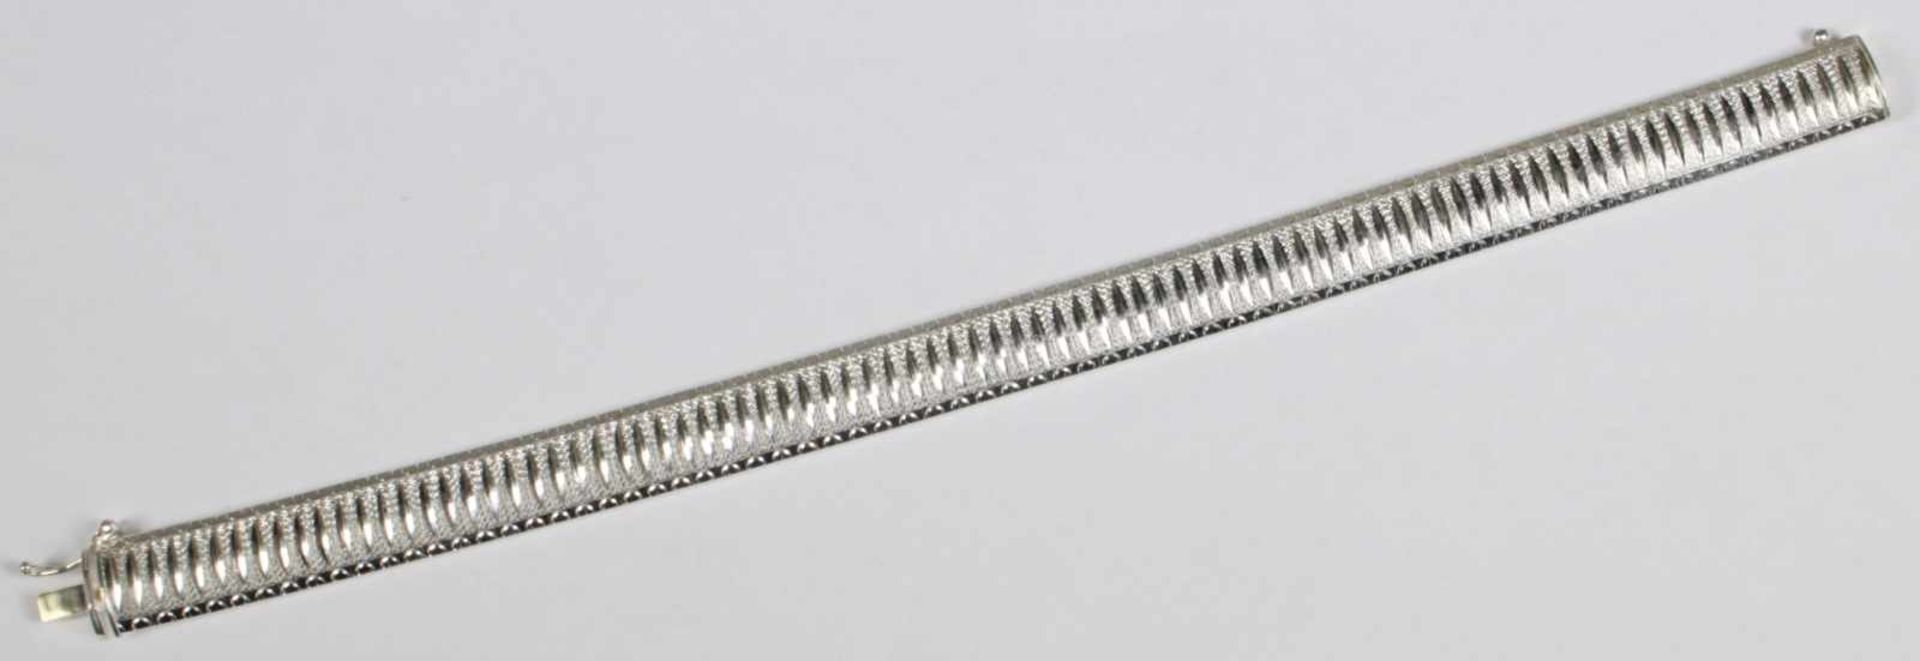 Armband, neuzeitlich, Sterling Silber, strukturiertes Band, L 21 cm